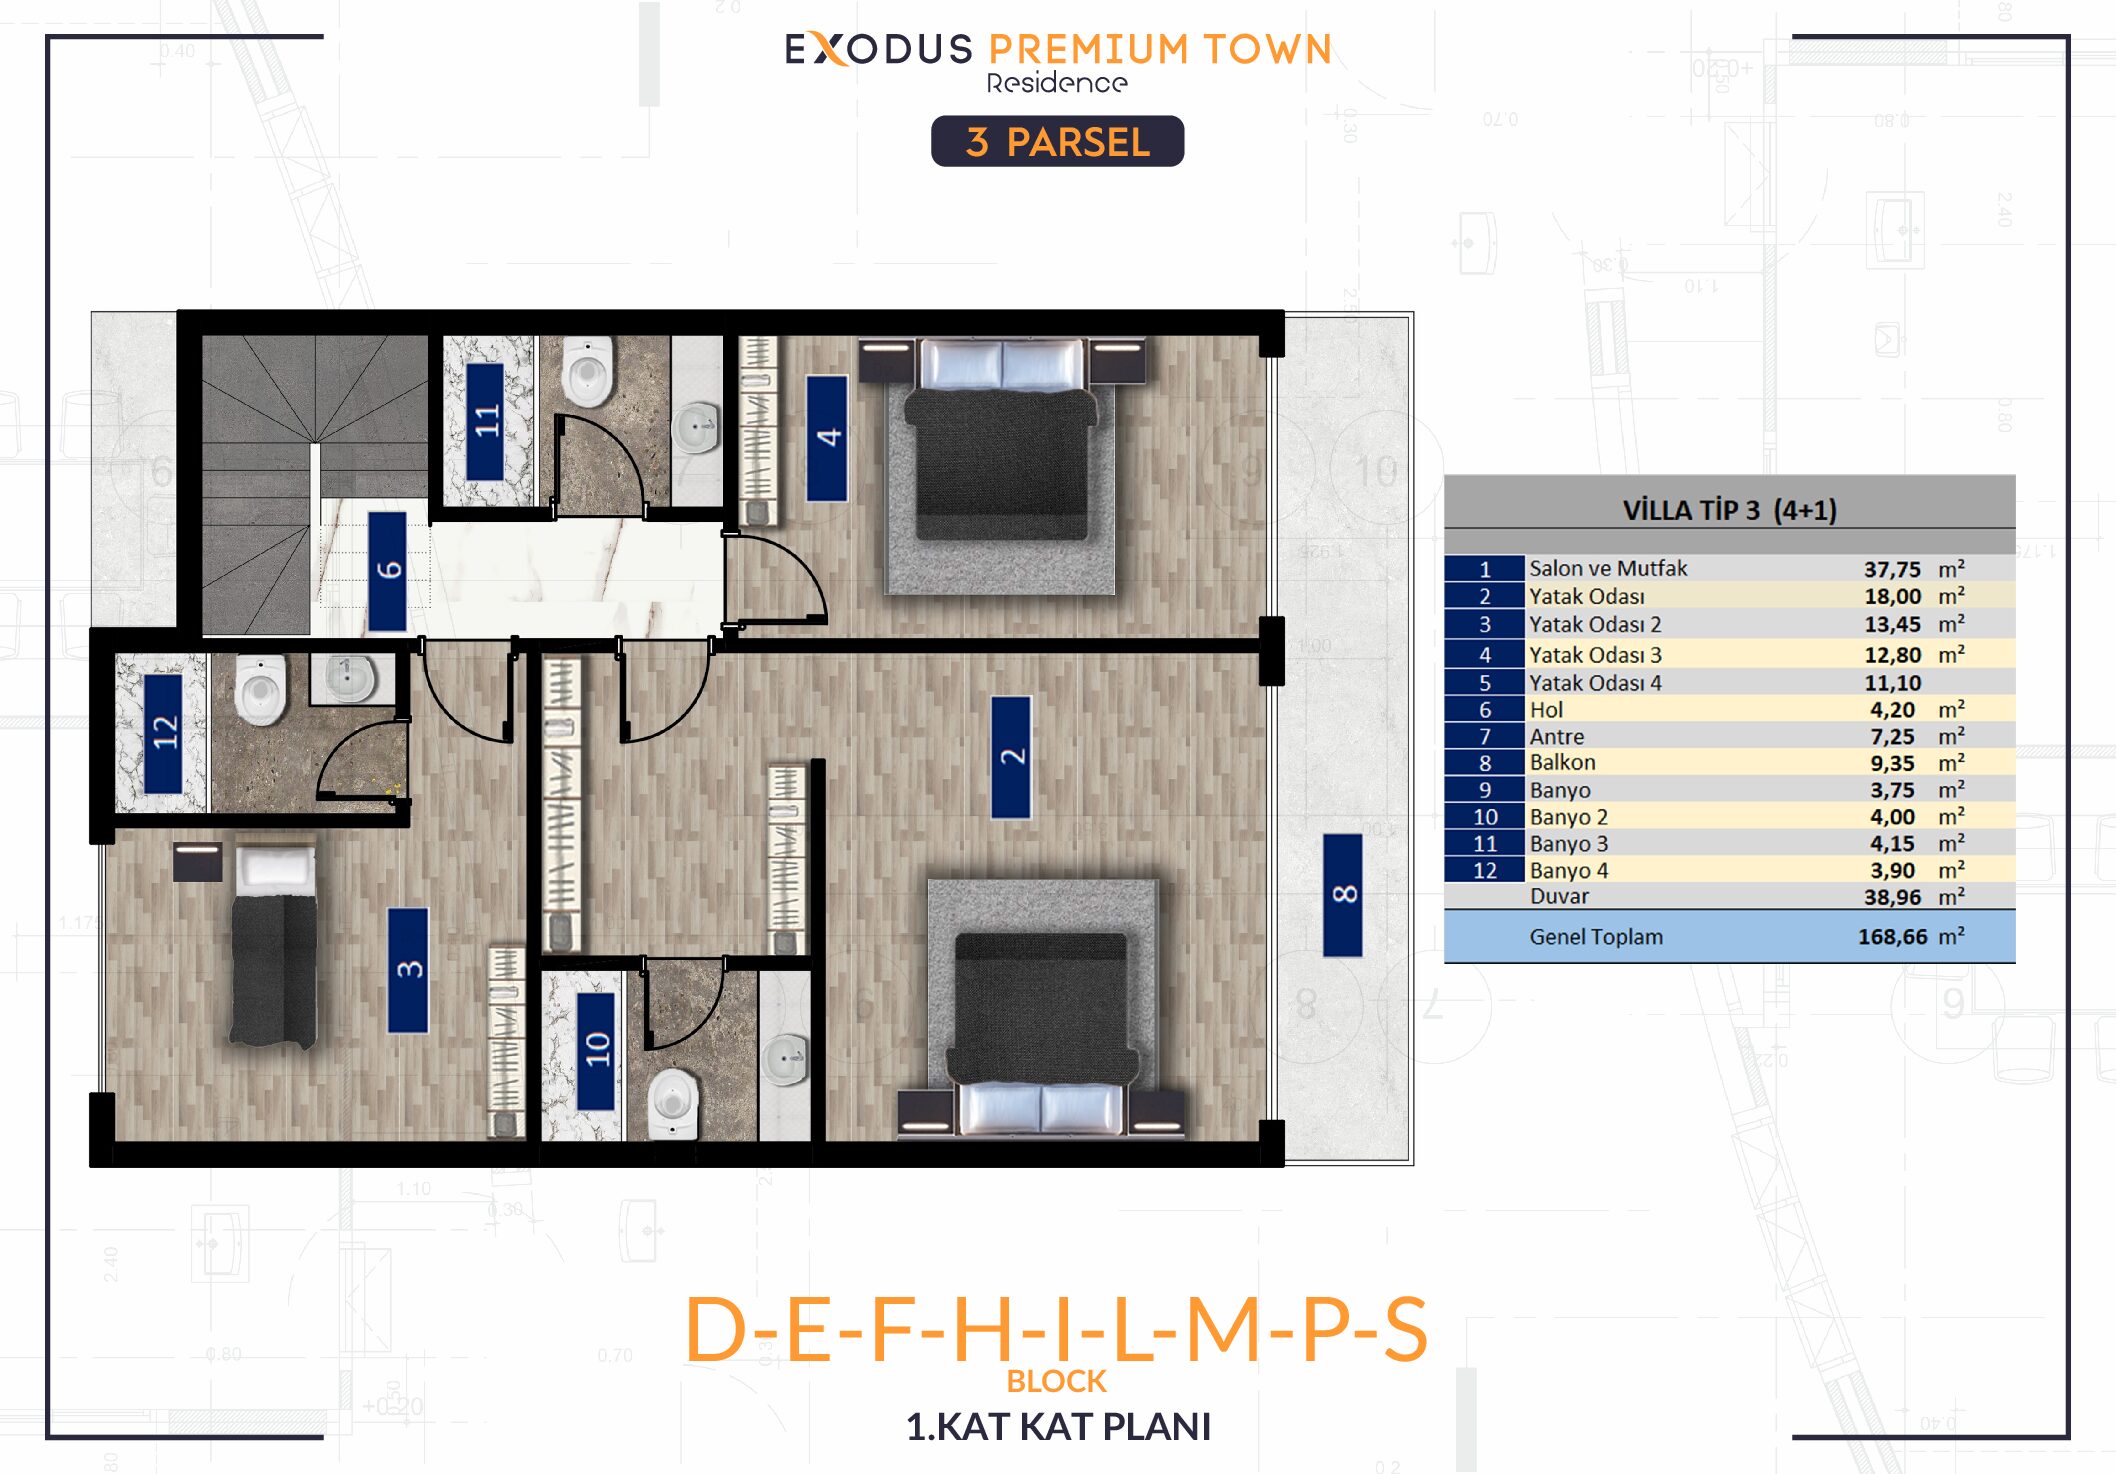 3.Parcel D-E-F-H-I-L-M-P-S Detached Villa 1.Floor Plan